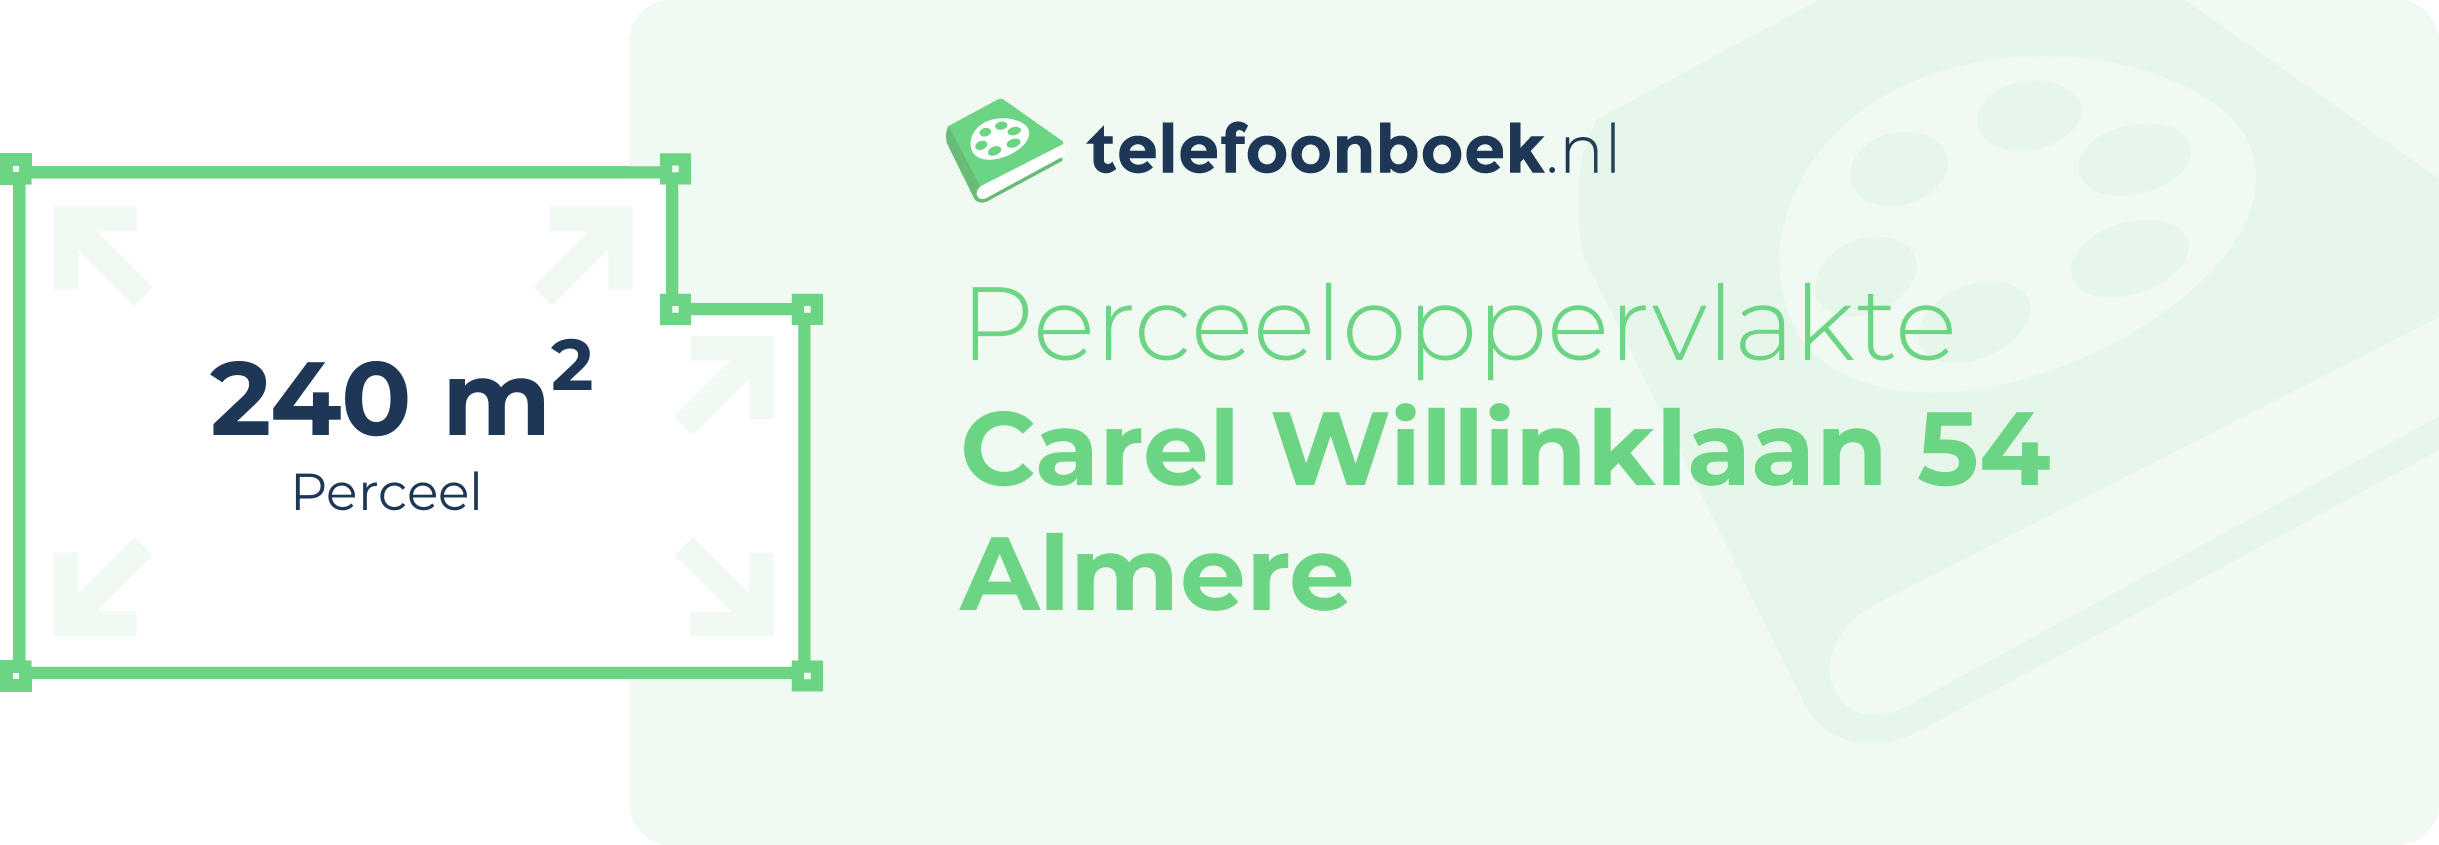 Perceeloppervlakte Carel Willinklaan 54 Almere